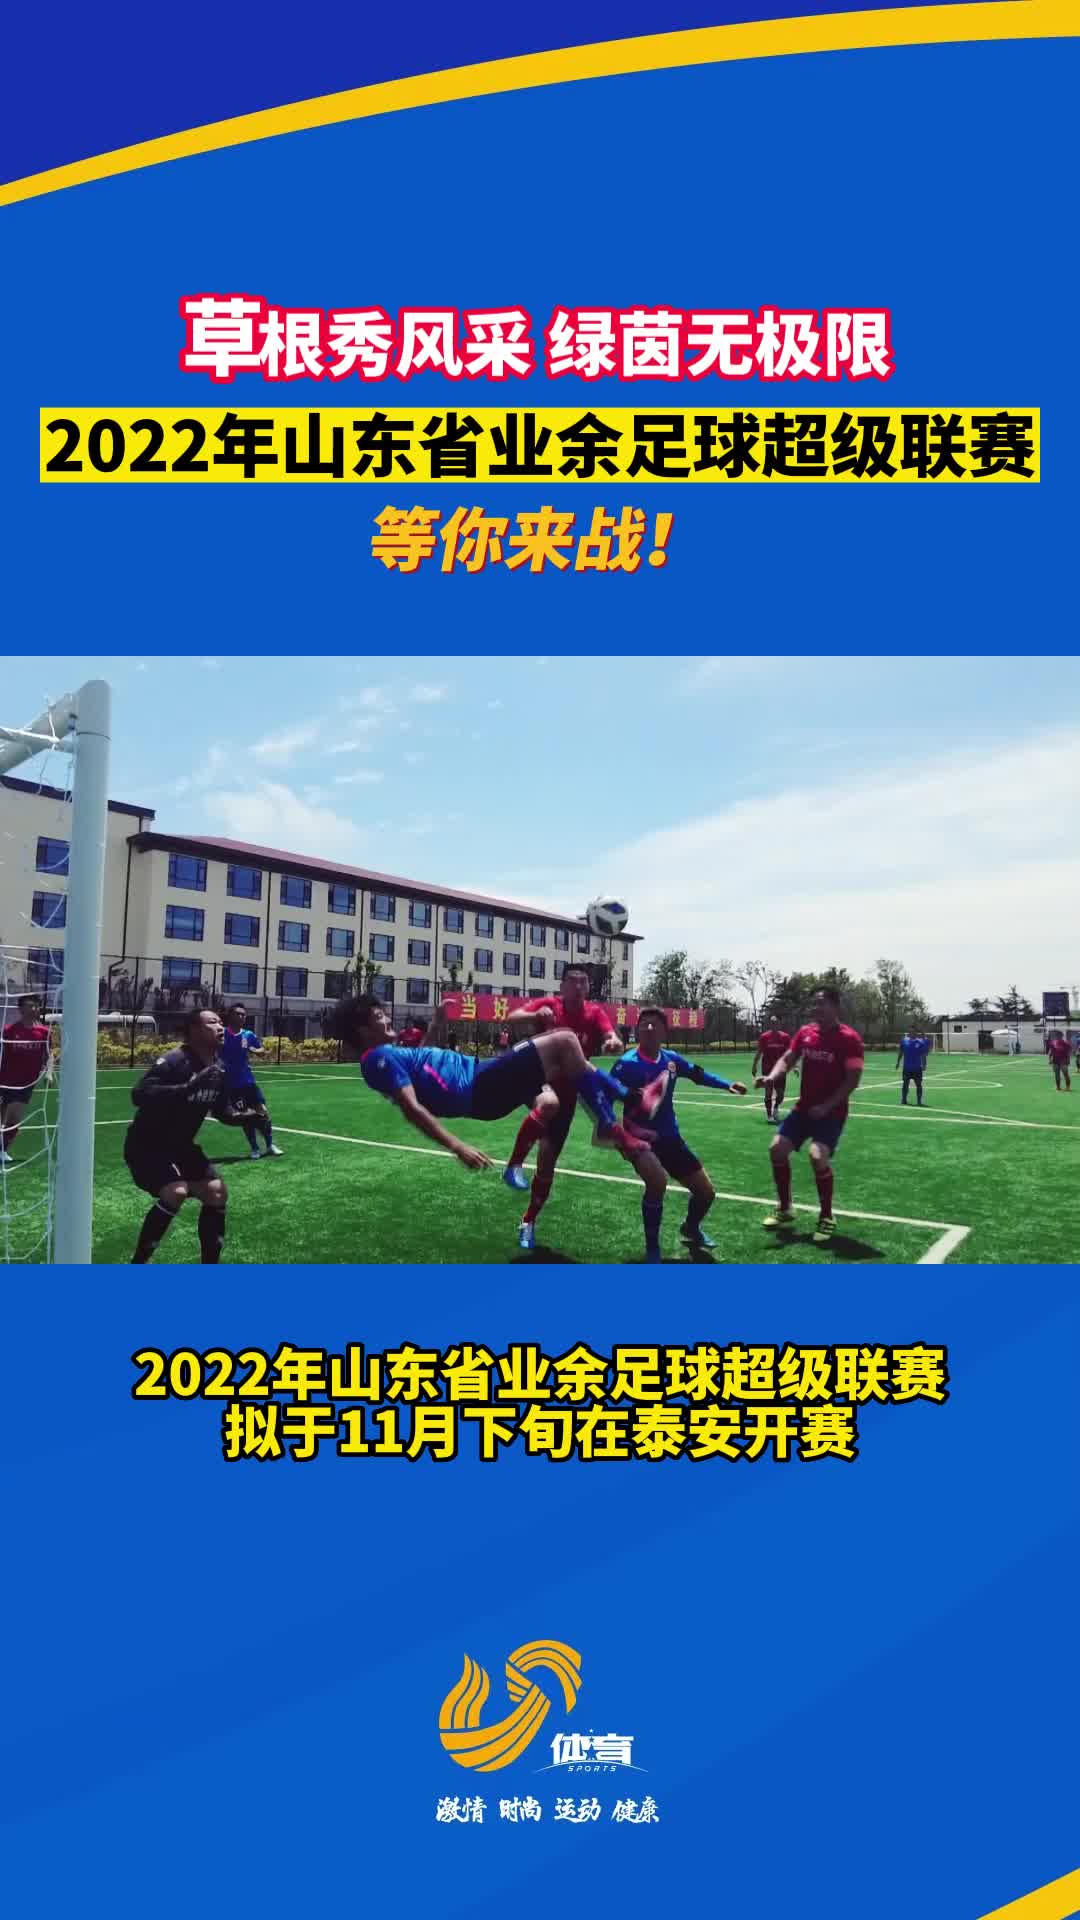 等你来战！2022年山东省业余足球超级联赛即将来袭